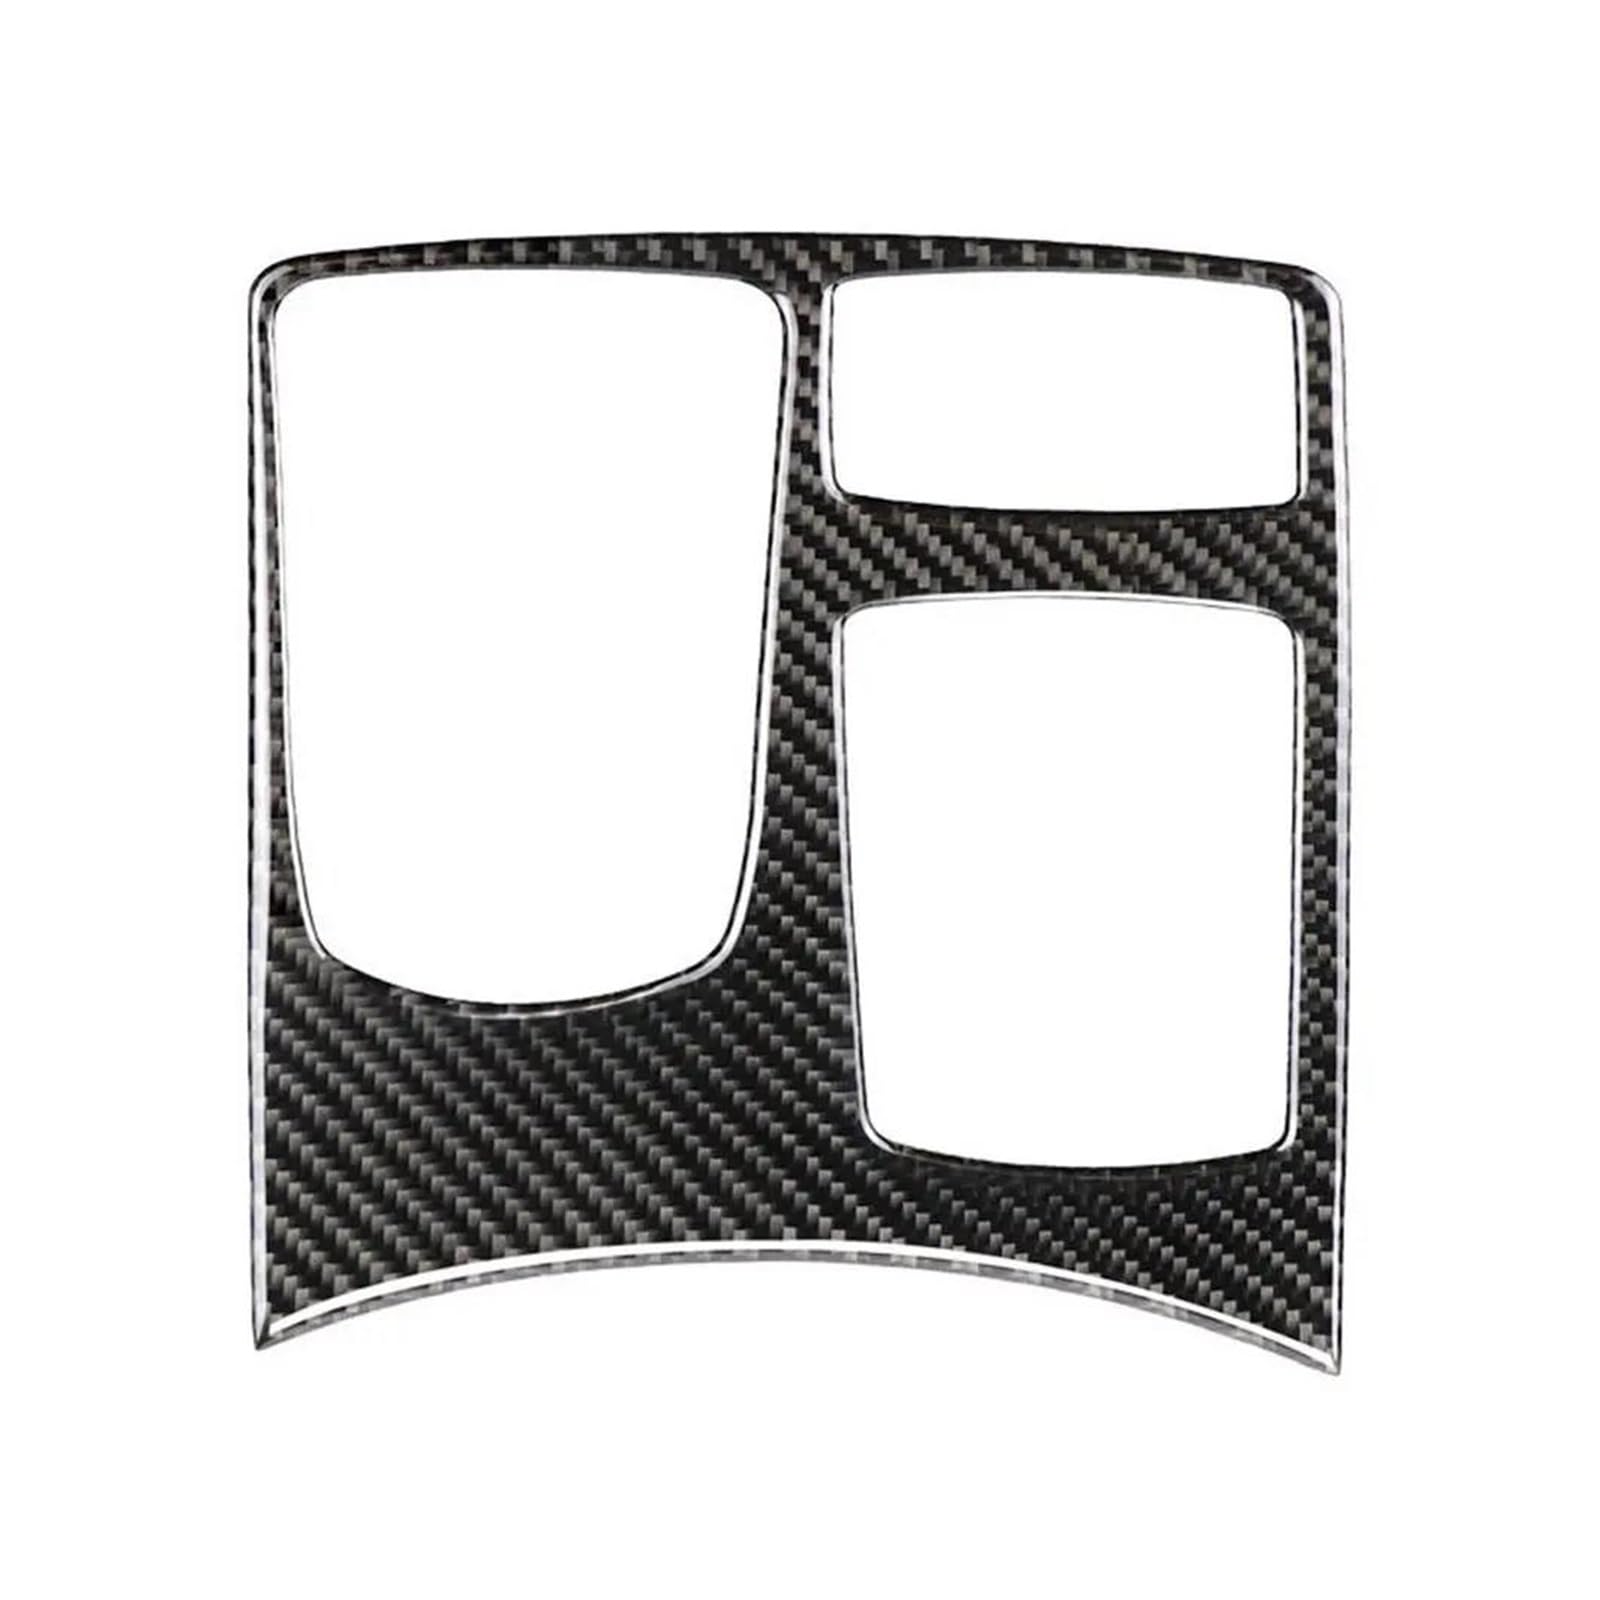 Zentralsteuerung Schalttafel Trim Cover Für Benz Für GLE Für GLS 2016 2017 2018 Perfekte Ausstattung Stilvolle Carbon Faser Konsole Getriebe Shift Panel Trim von XuYingBhd